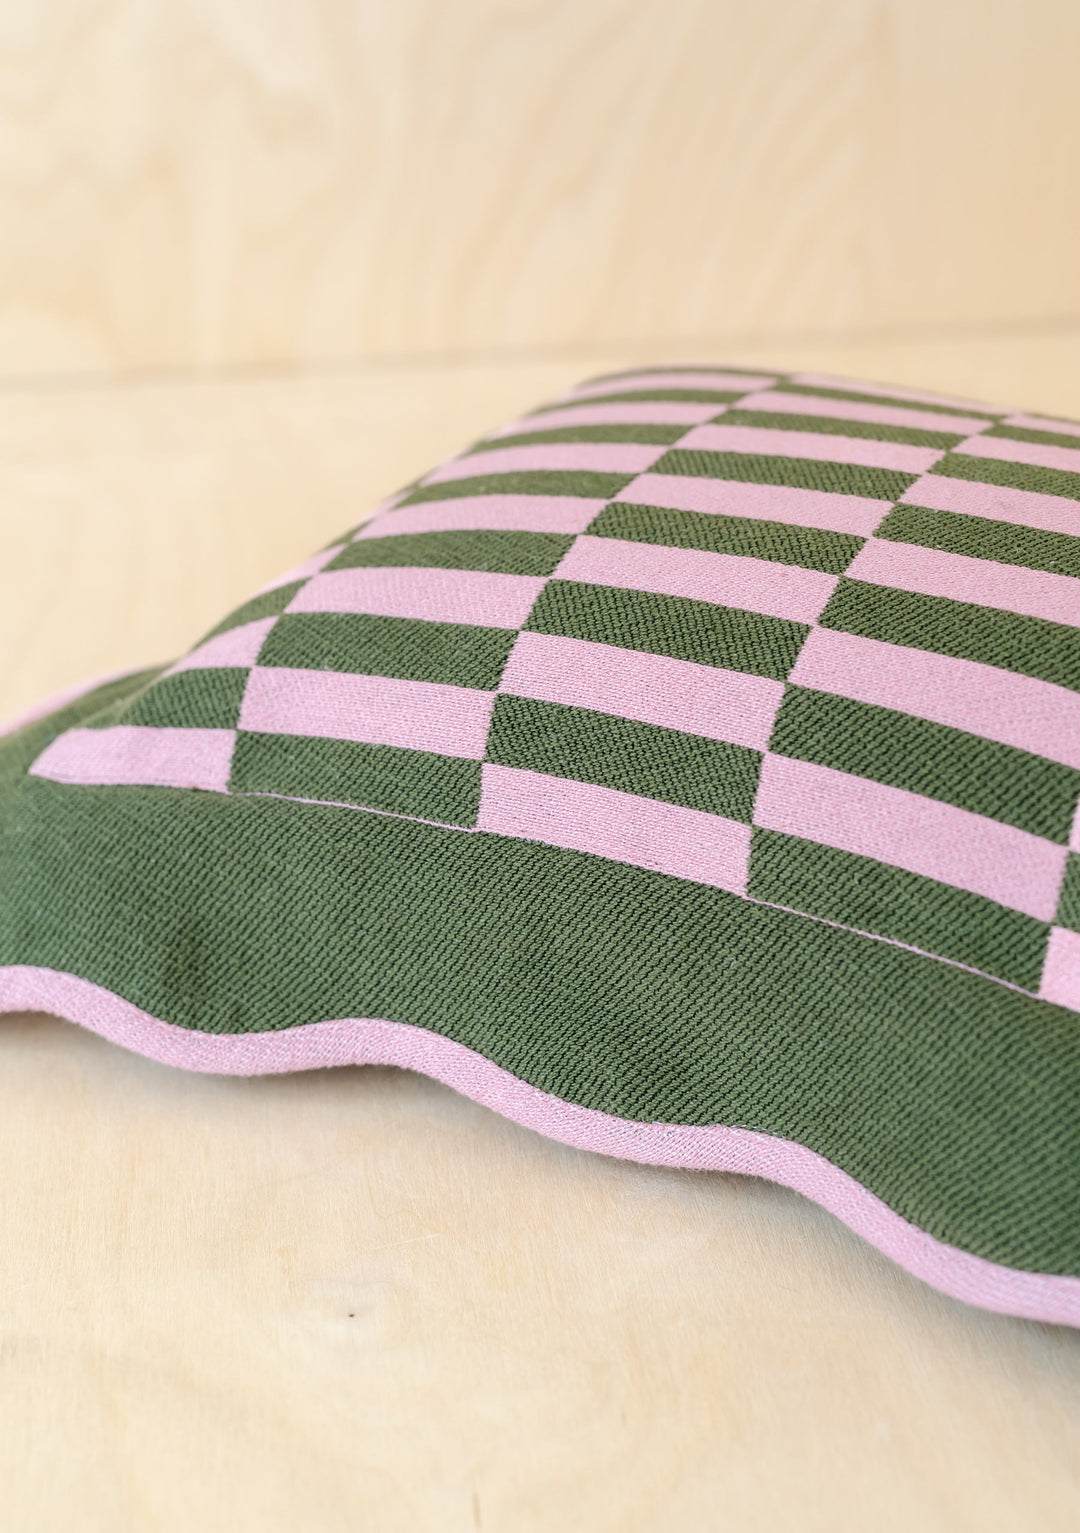 Olivgrüner Kissenbezug aus Baumwolle mit Schachbrettmuster